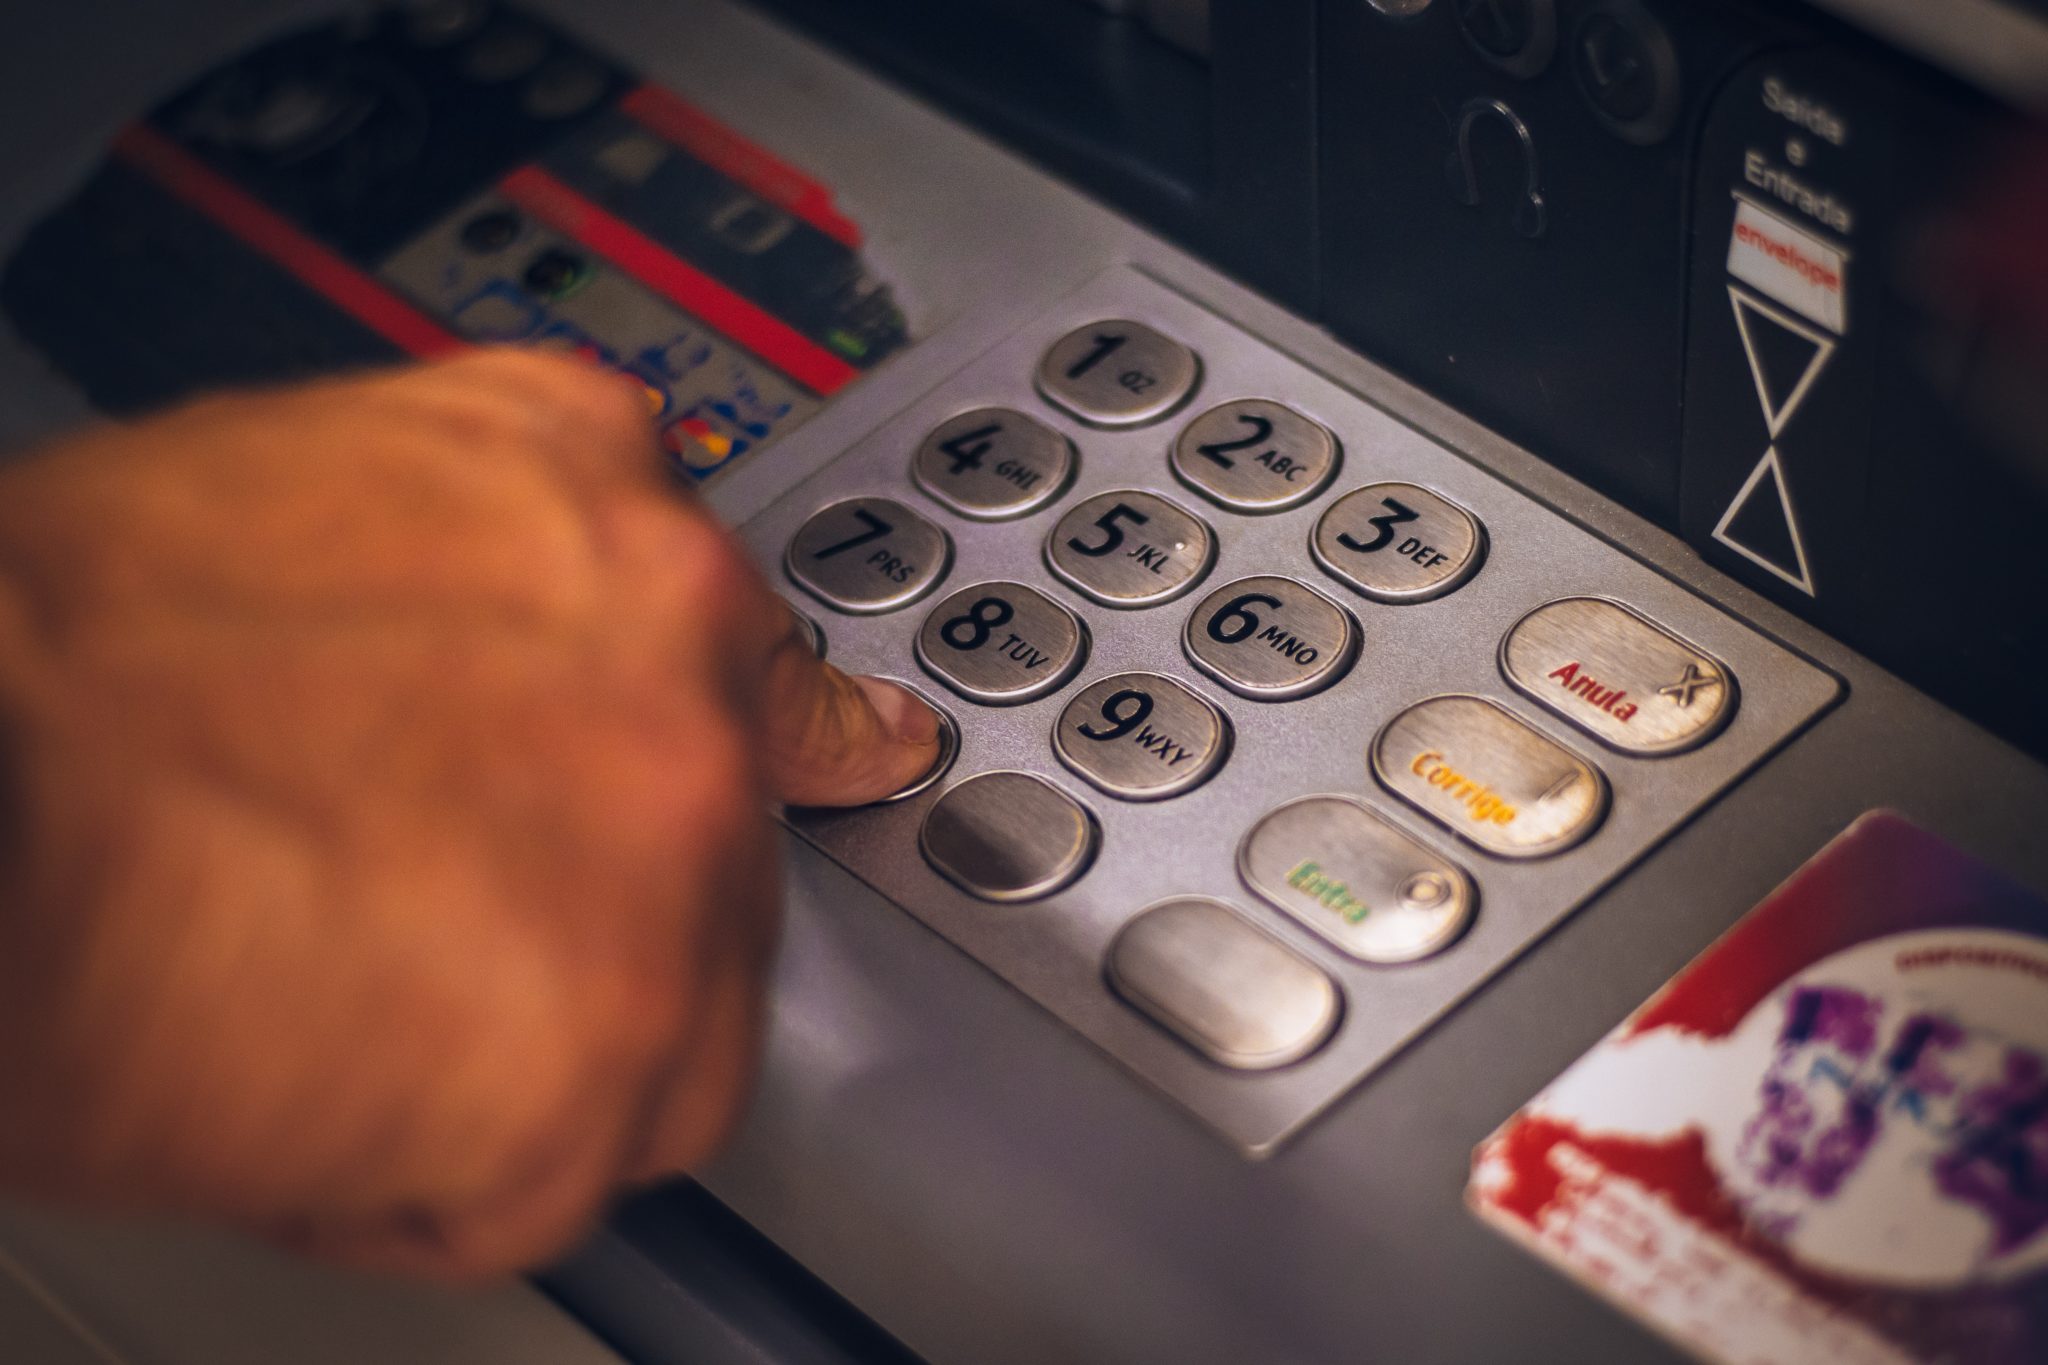 Foto focada nos números de um caixa eletrônico, com um dedo pressionando uma das teclas